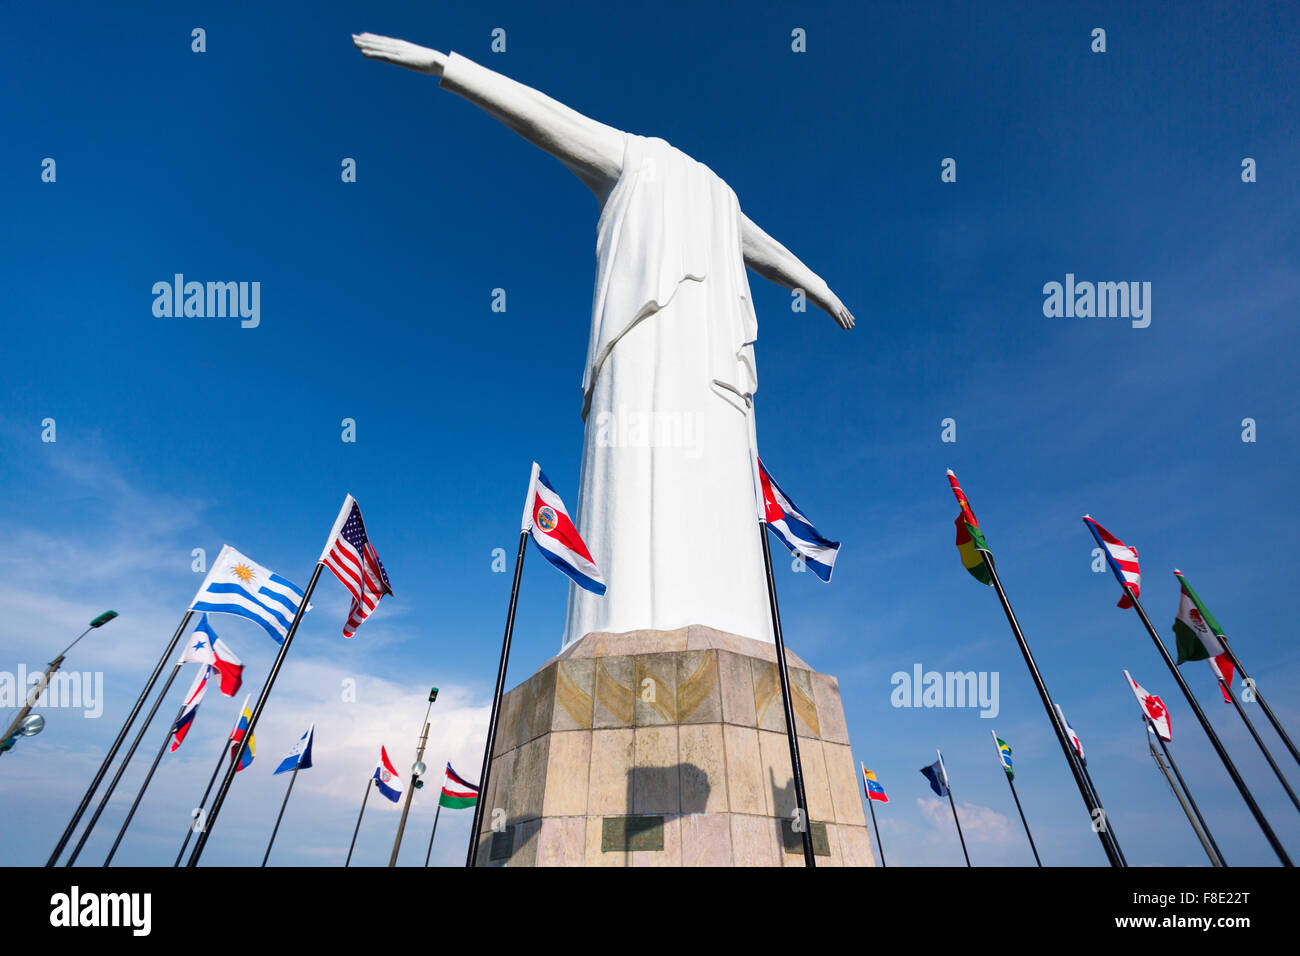 Cristo del Rey statue de Cali contre un ciel bleu avec des drapeaux flottant autour. Colombie Banque D'Images